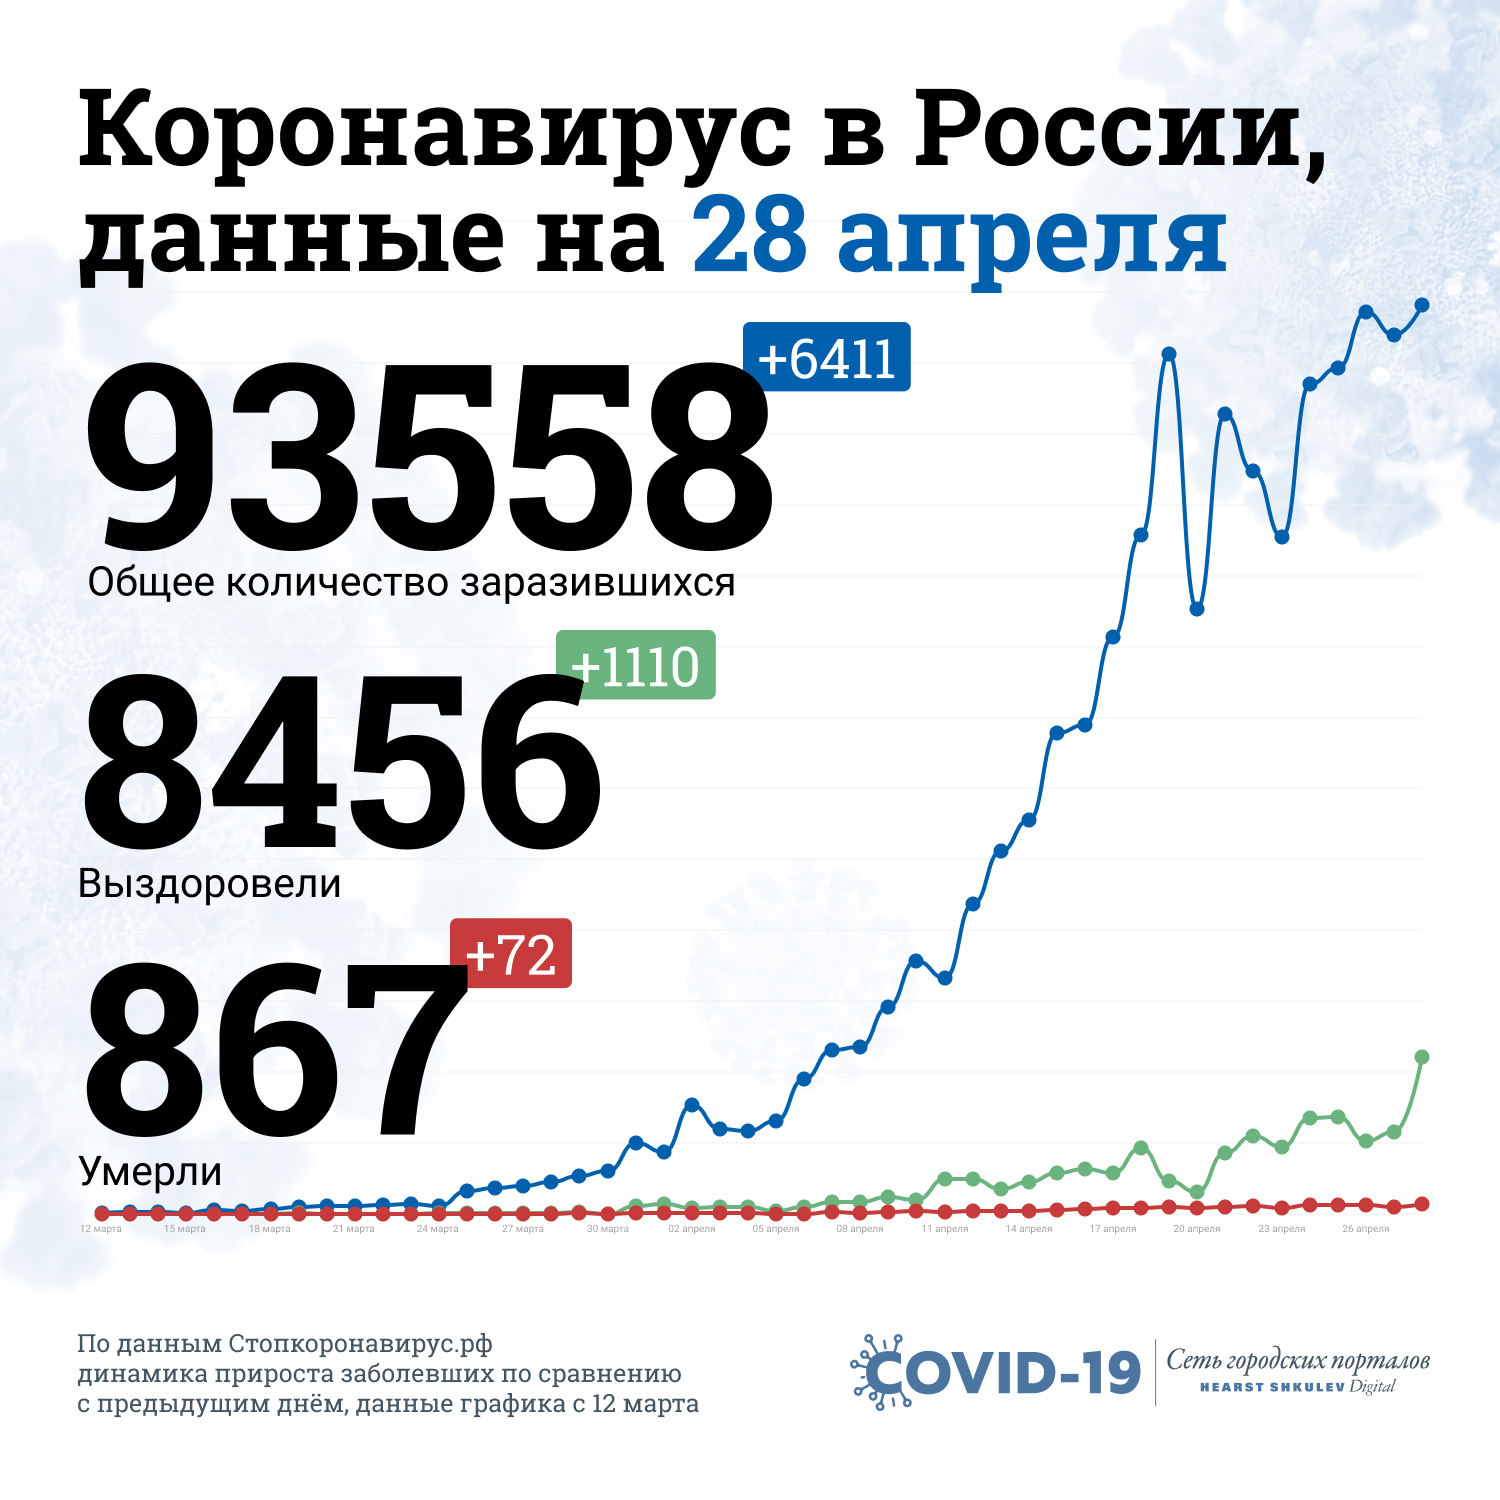 Последние данные о коронавирусе в России — в одной картинке